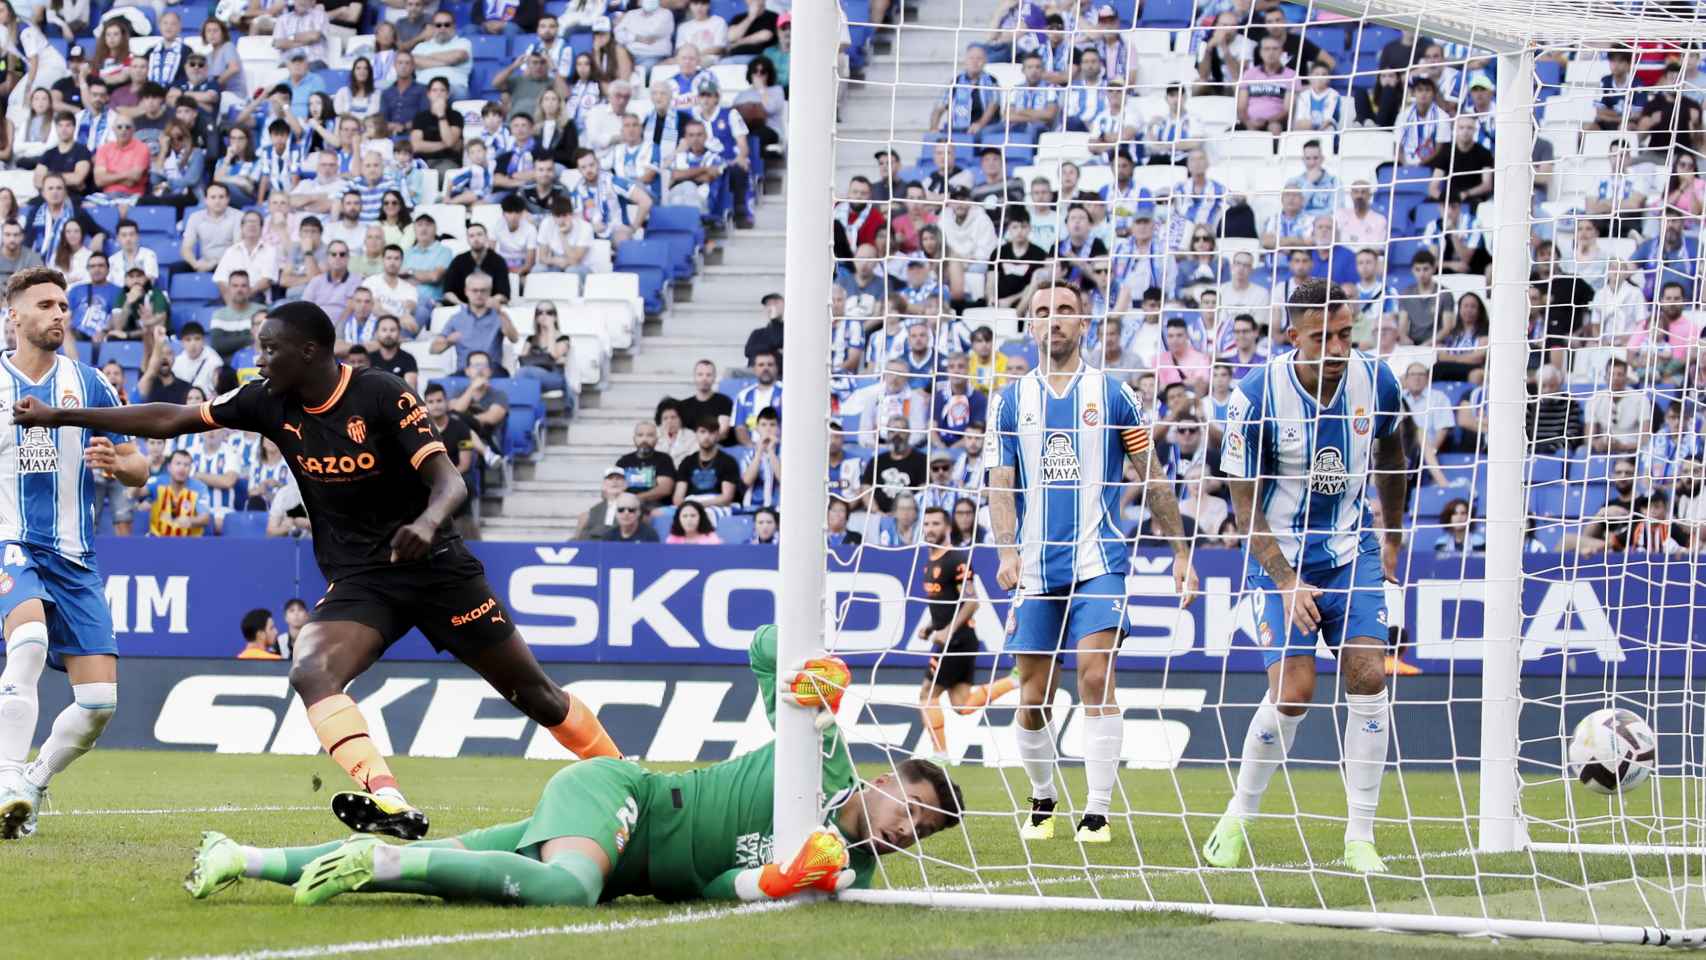 Llamarada Peregrinación Oxido Espanyol 2-2 Valencia | Resultado, resumen y estadísticas del partido de la  jornada 7